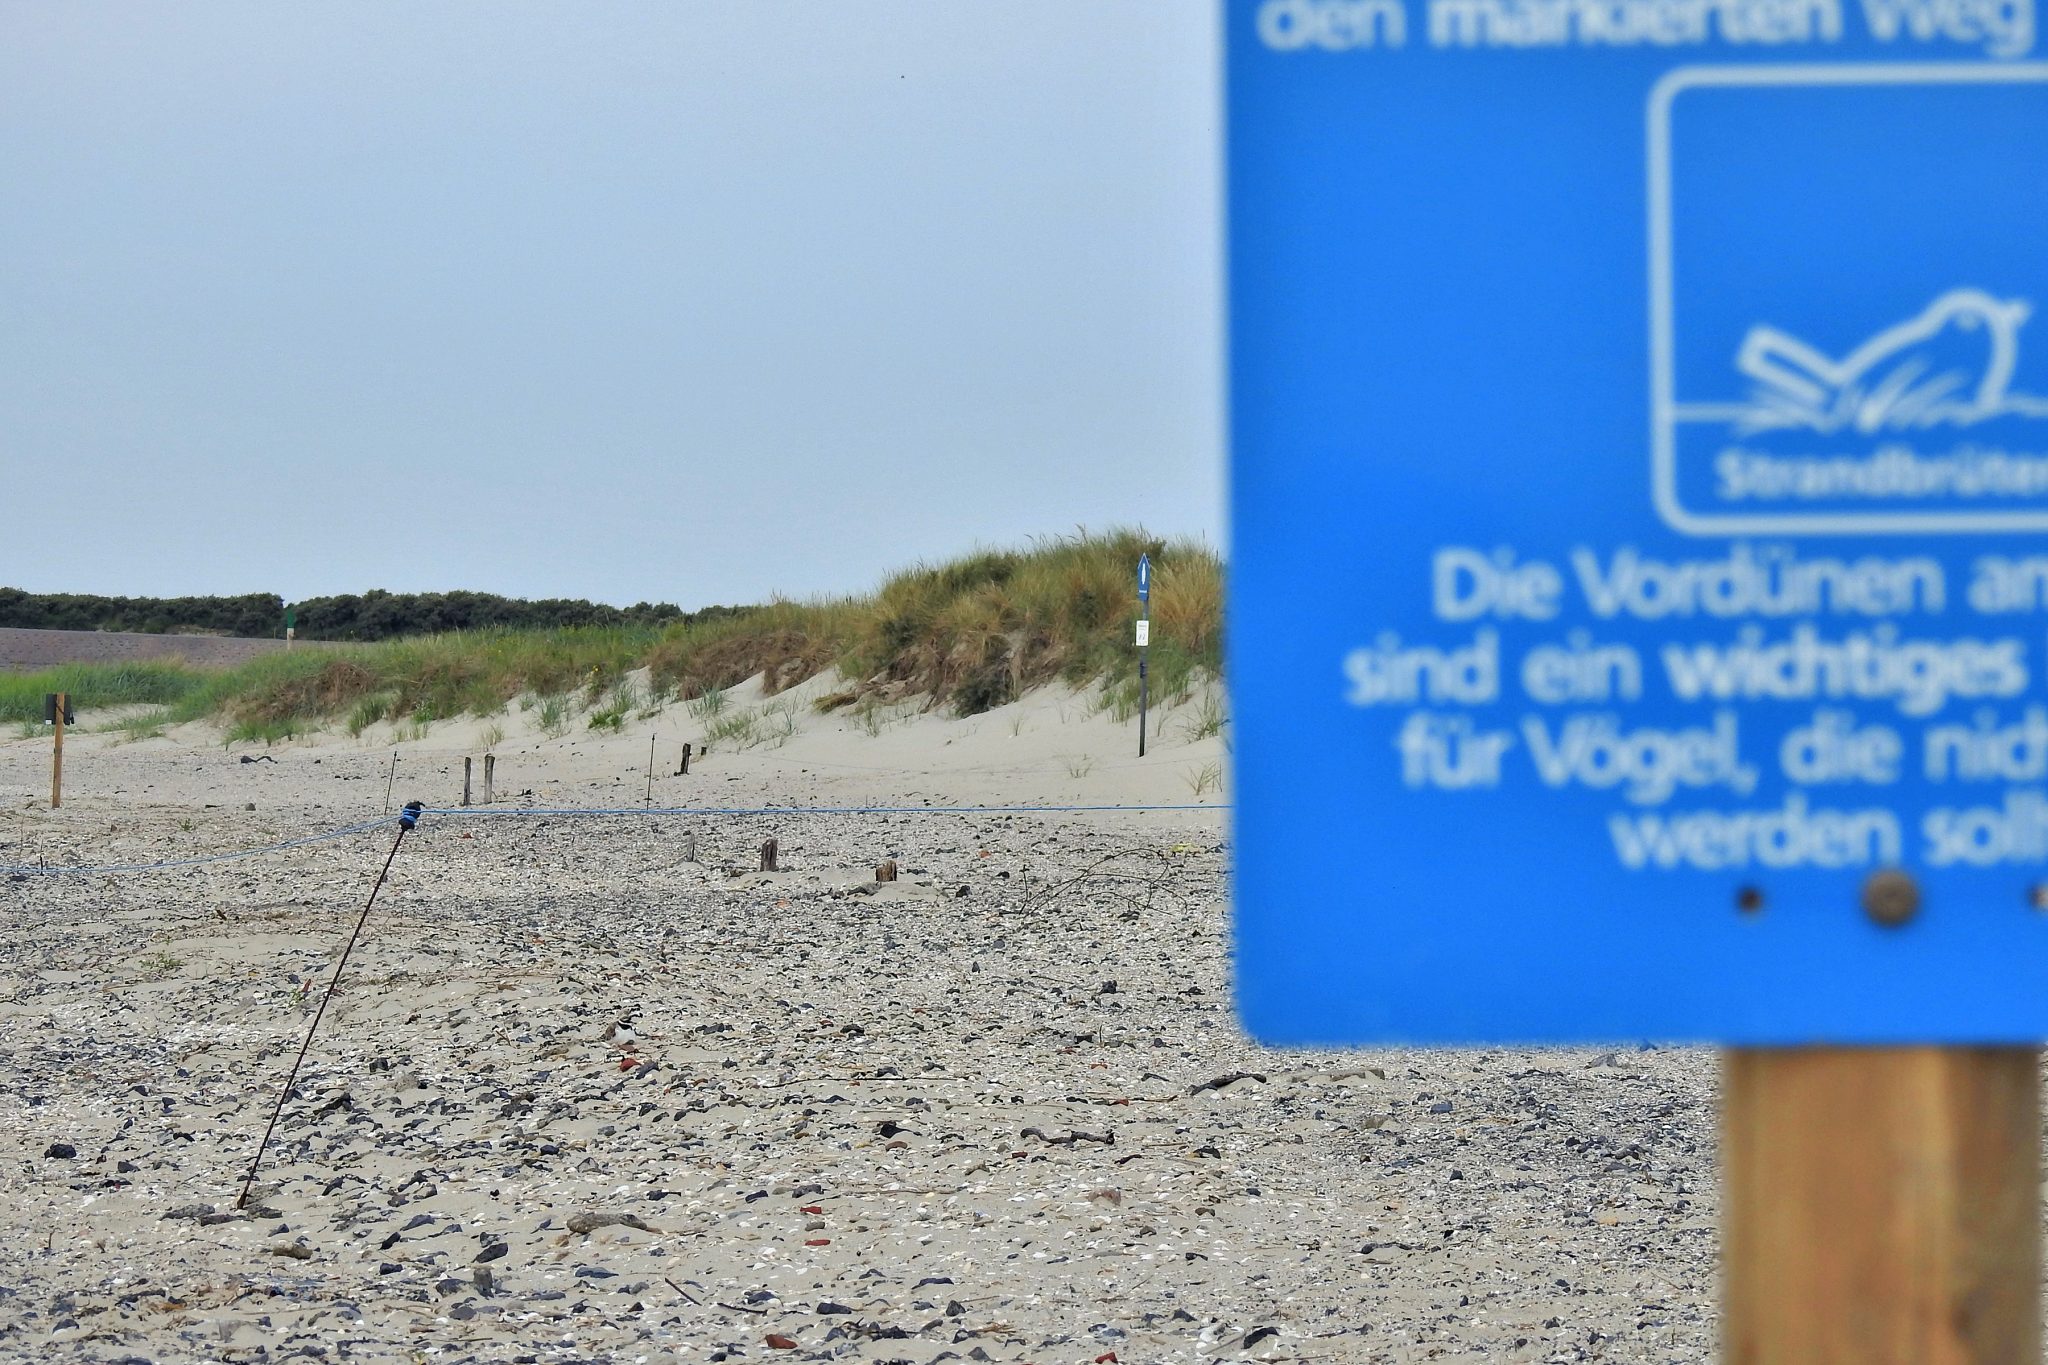 Am Strand von Borkum ist ein Brutgebiet mit einem mobilen Zaun und Schildern markiert.